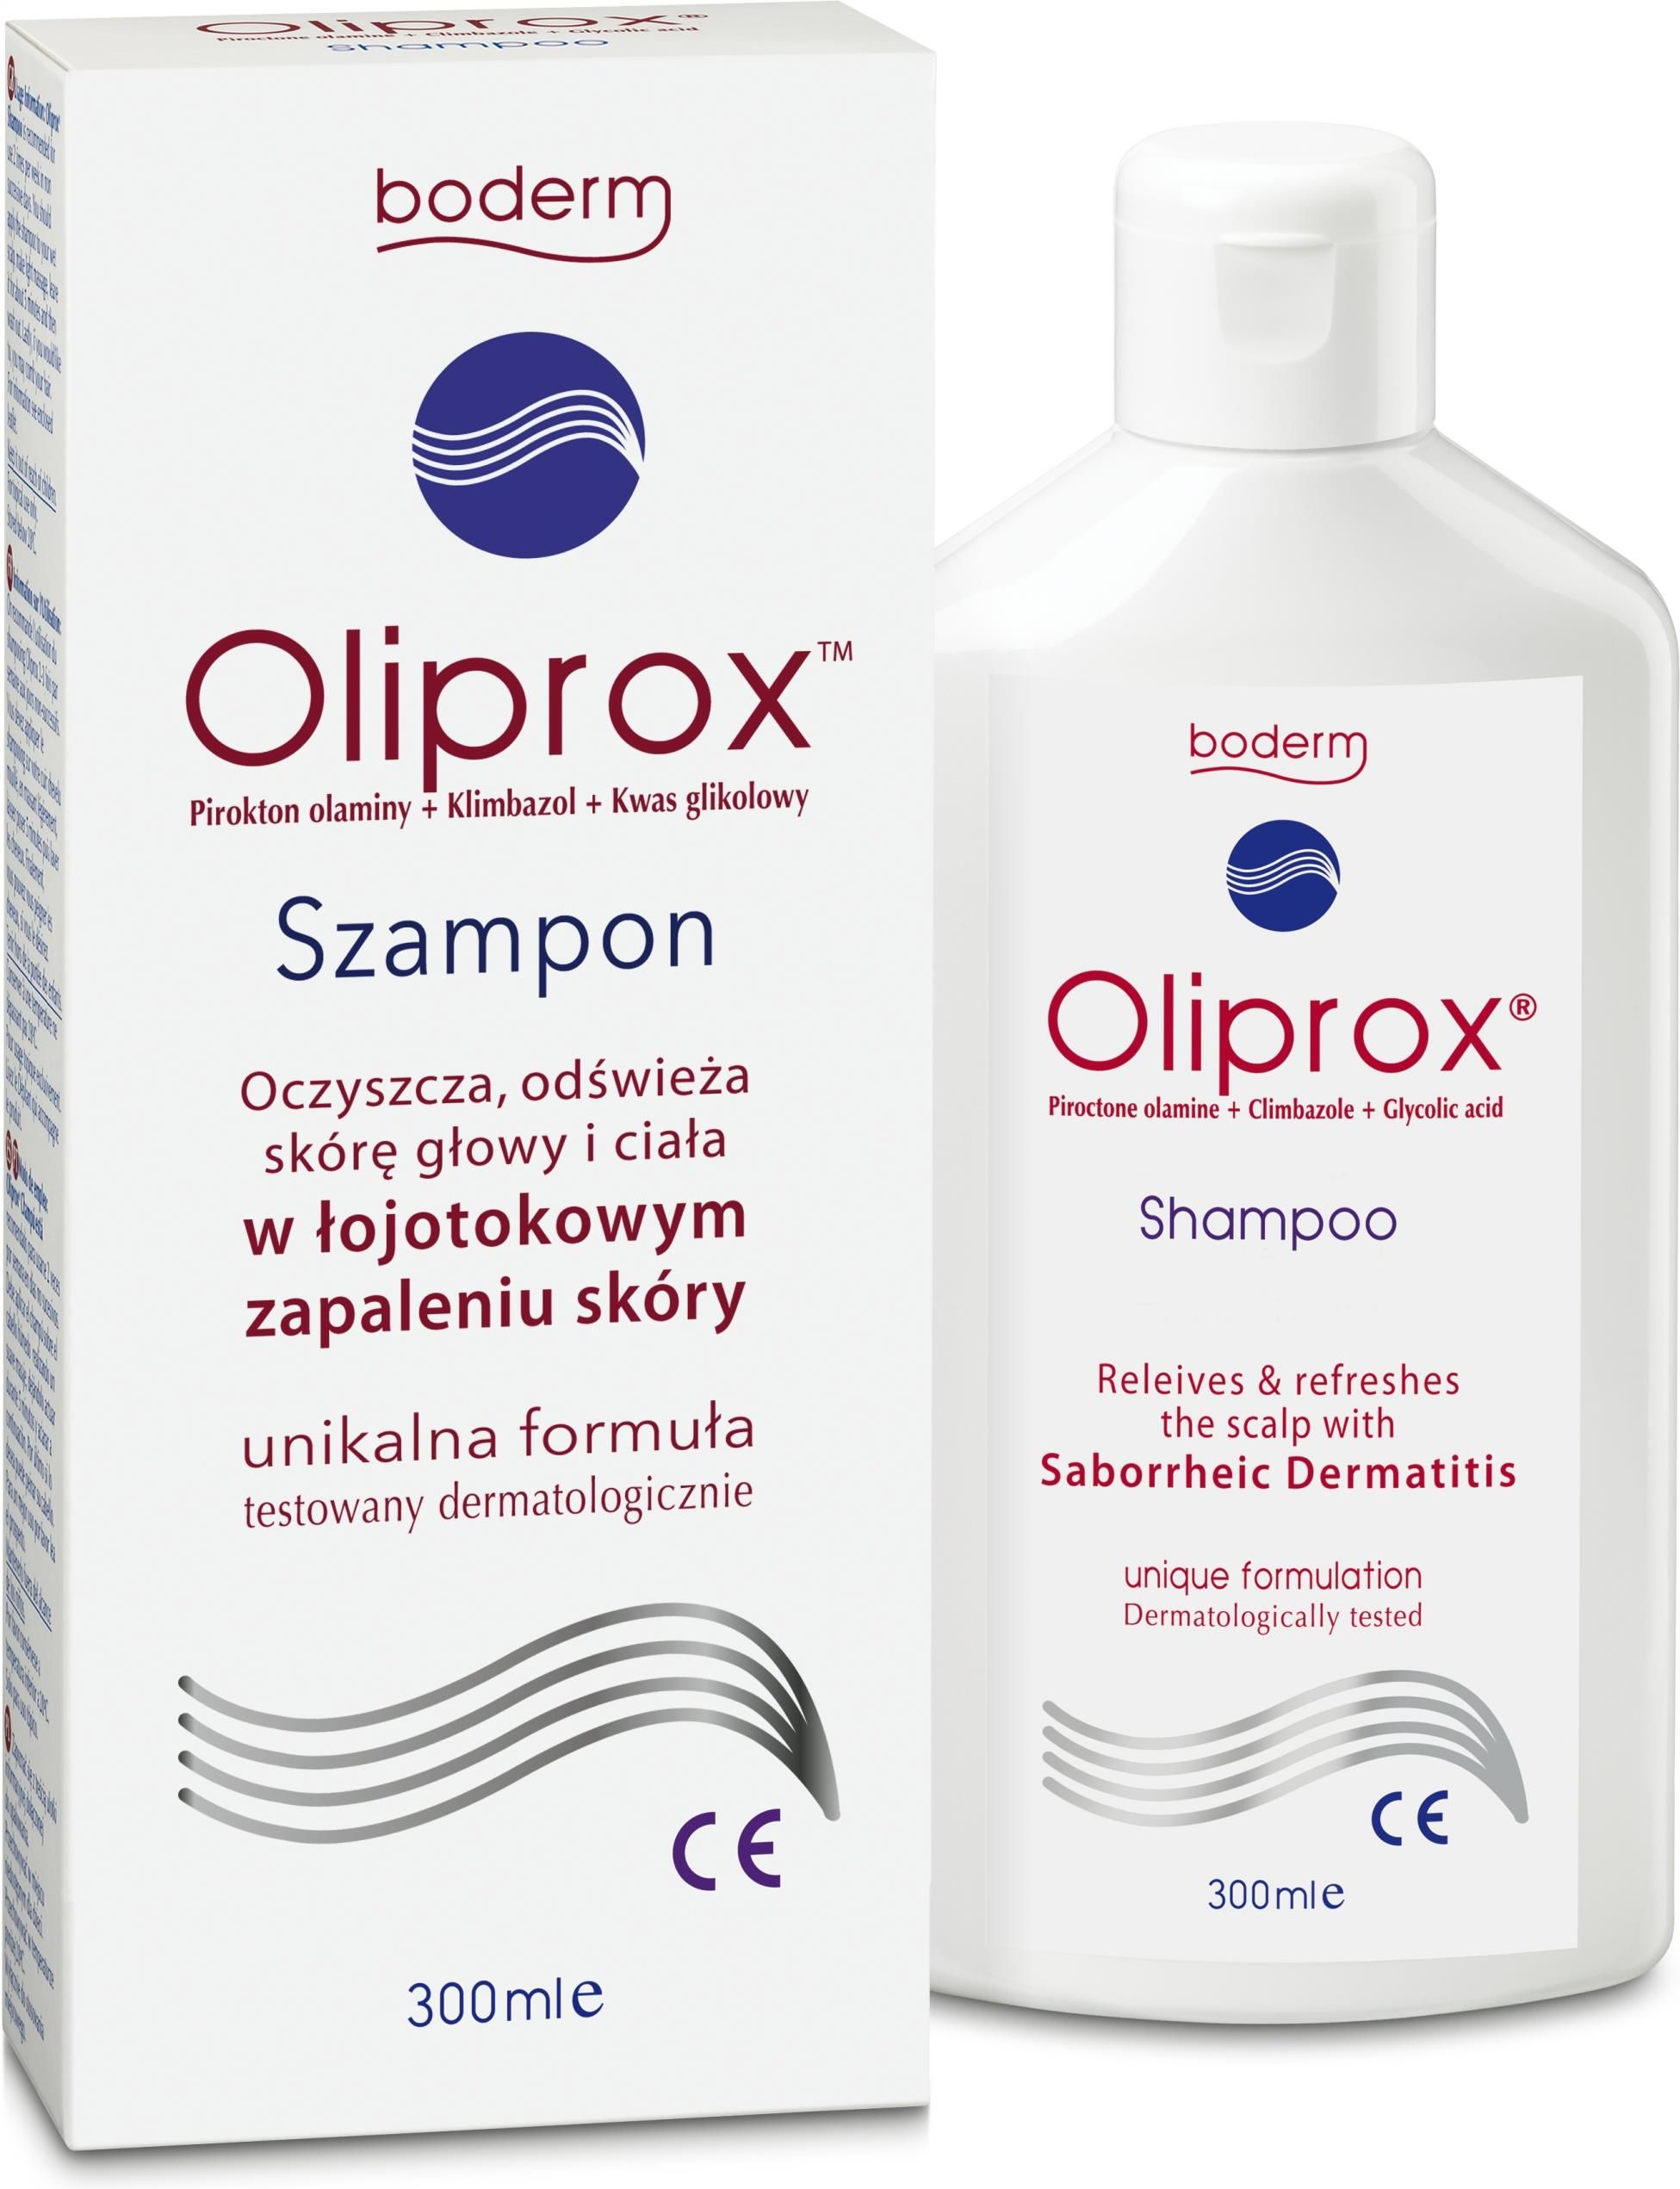 olipirox szampon ceneo